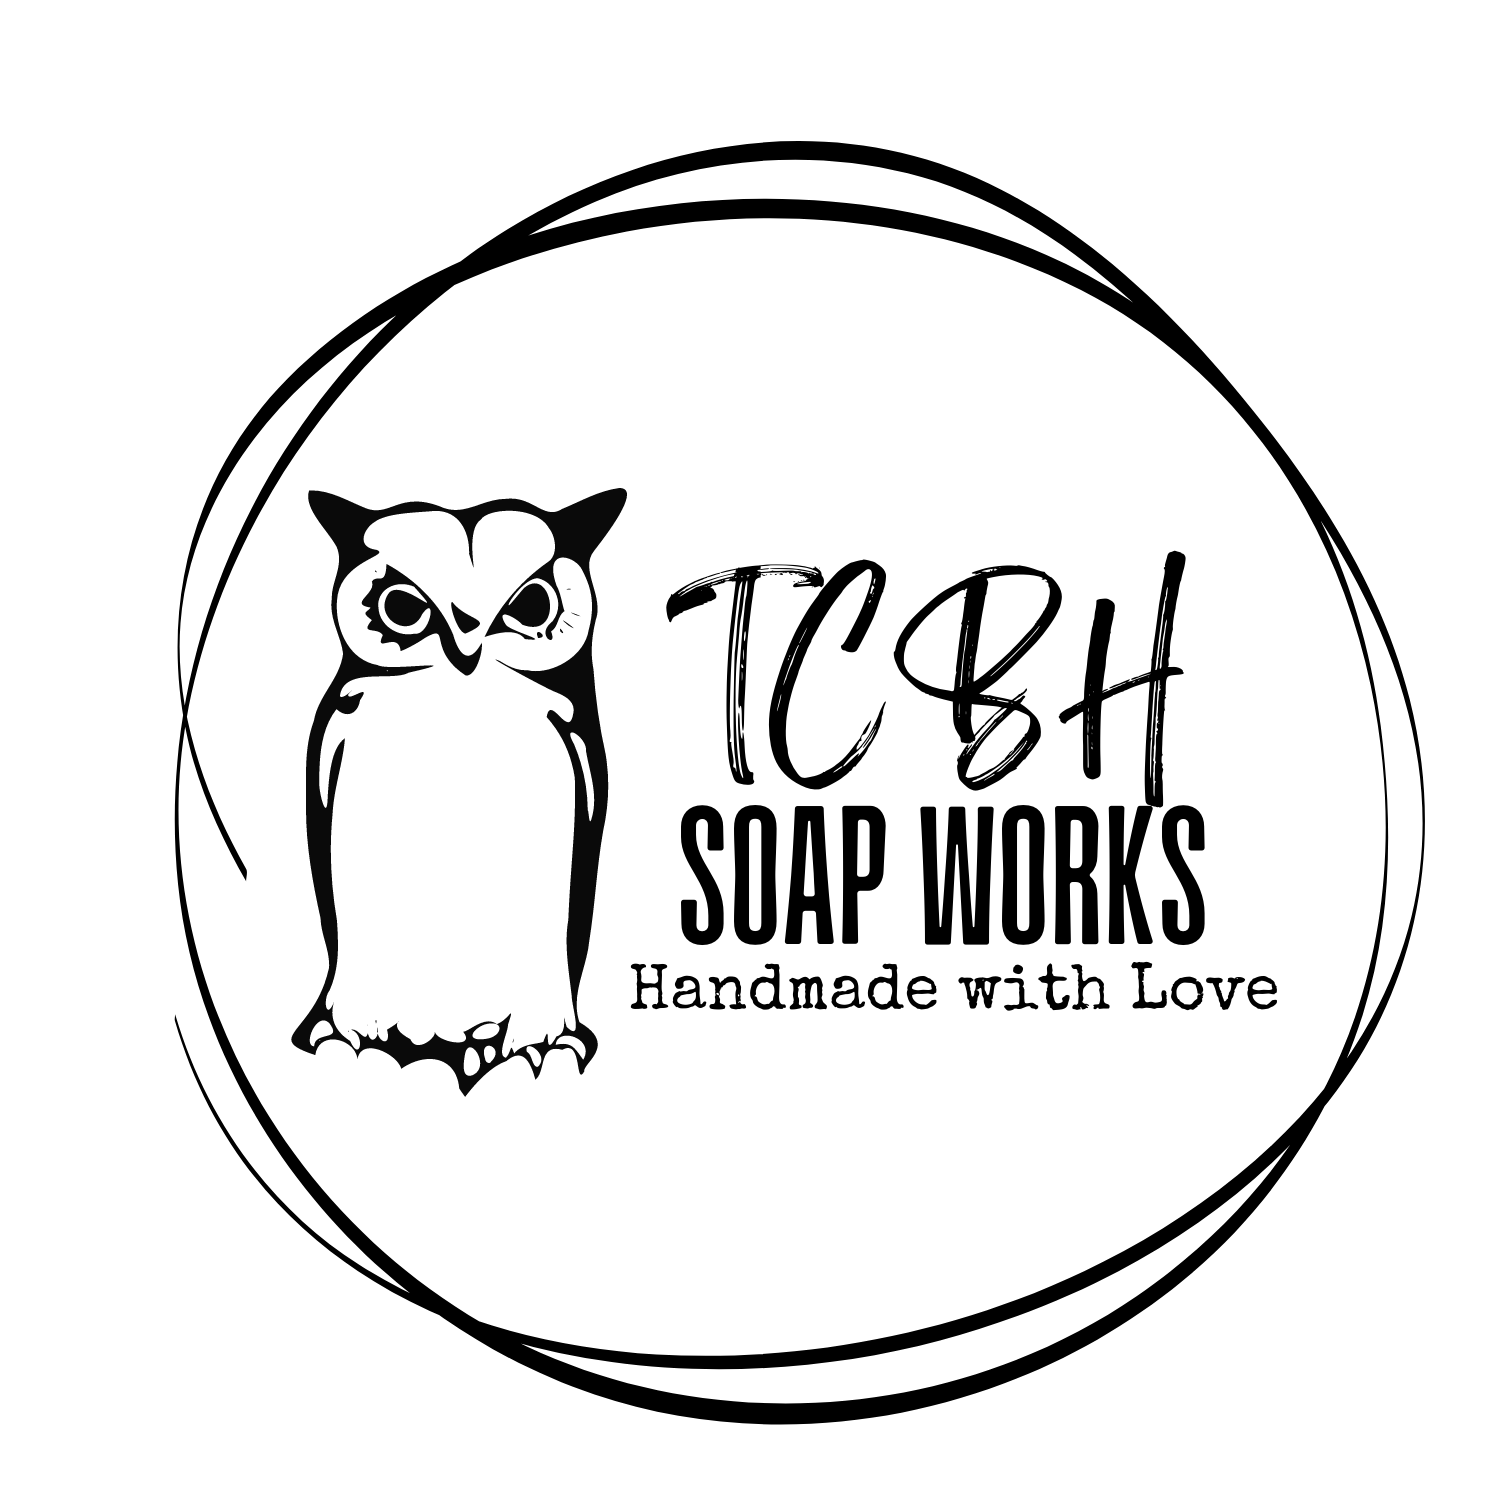 TCBH Soap Works LLC